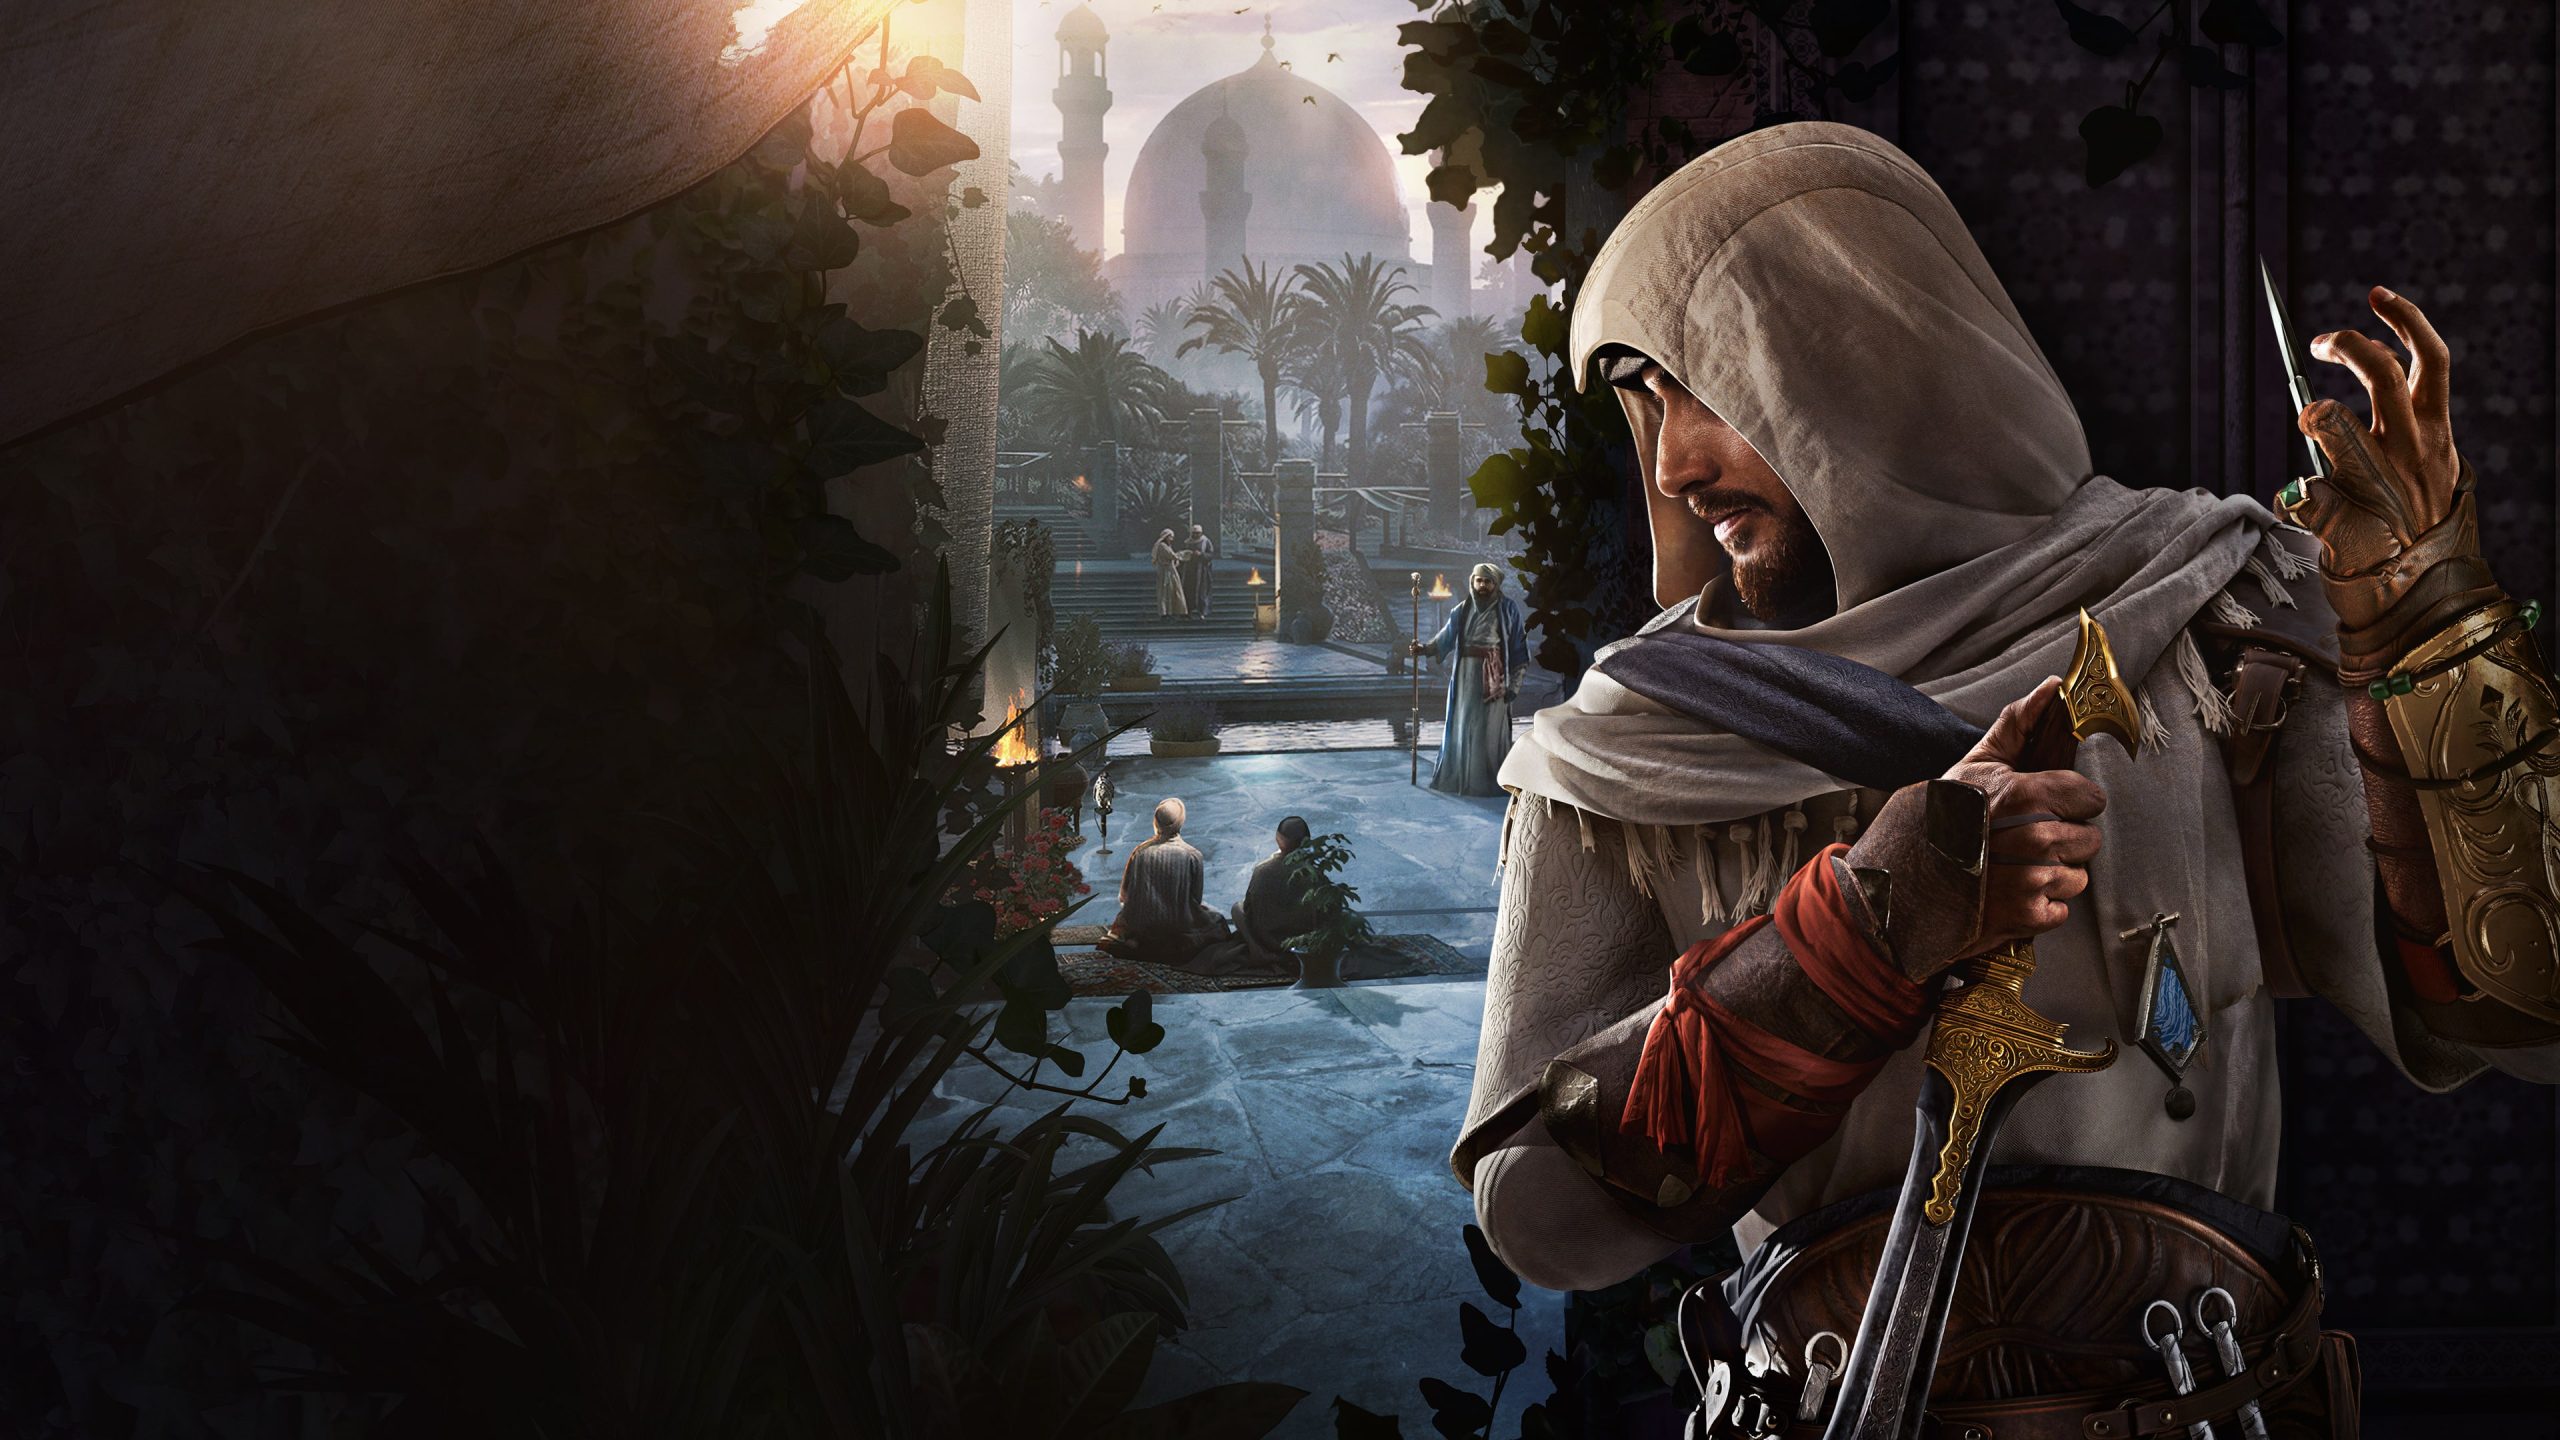 خرید بازی Assassin’s Creed Mirage برای PS4